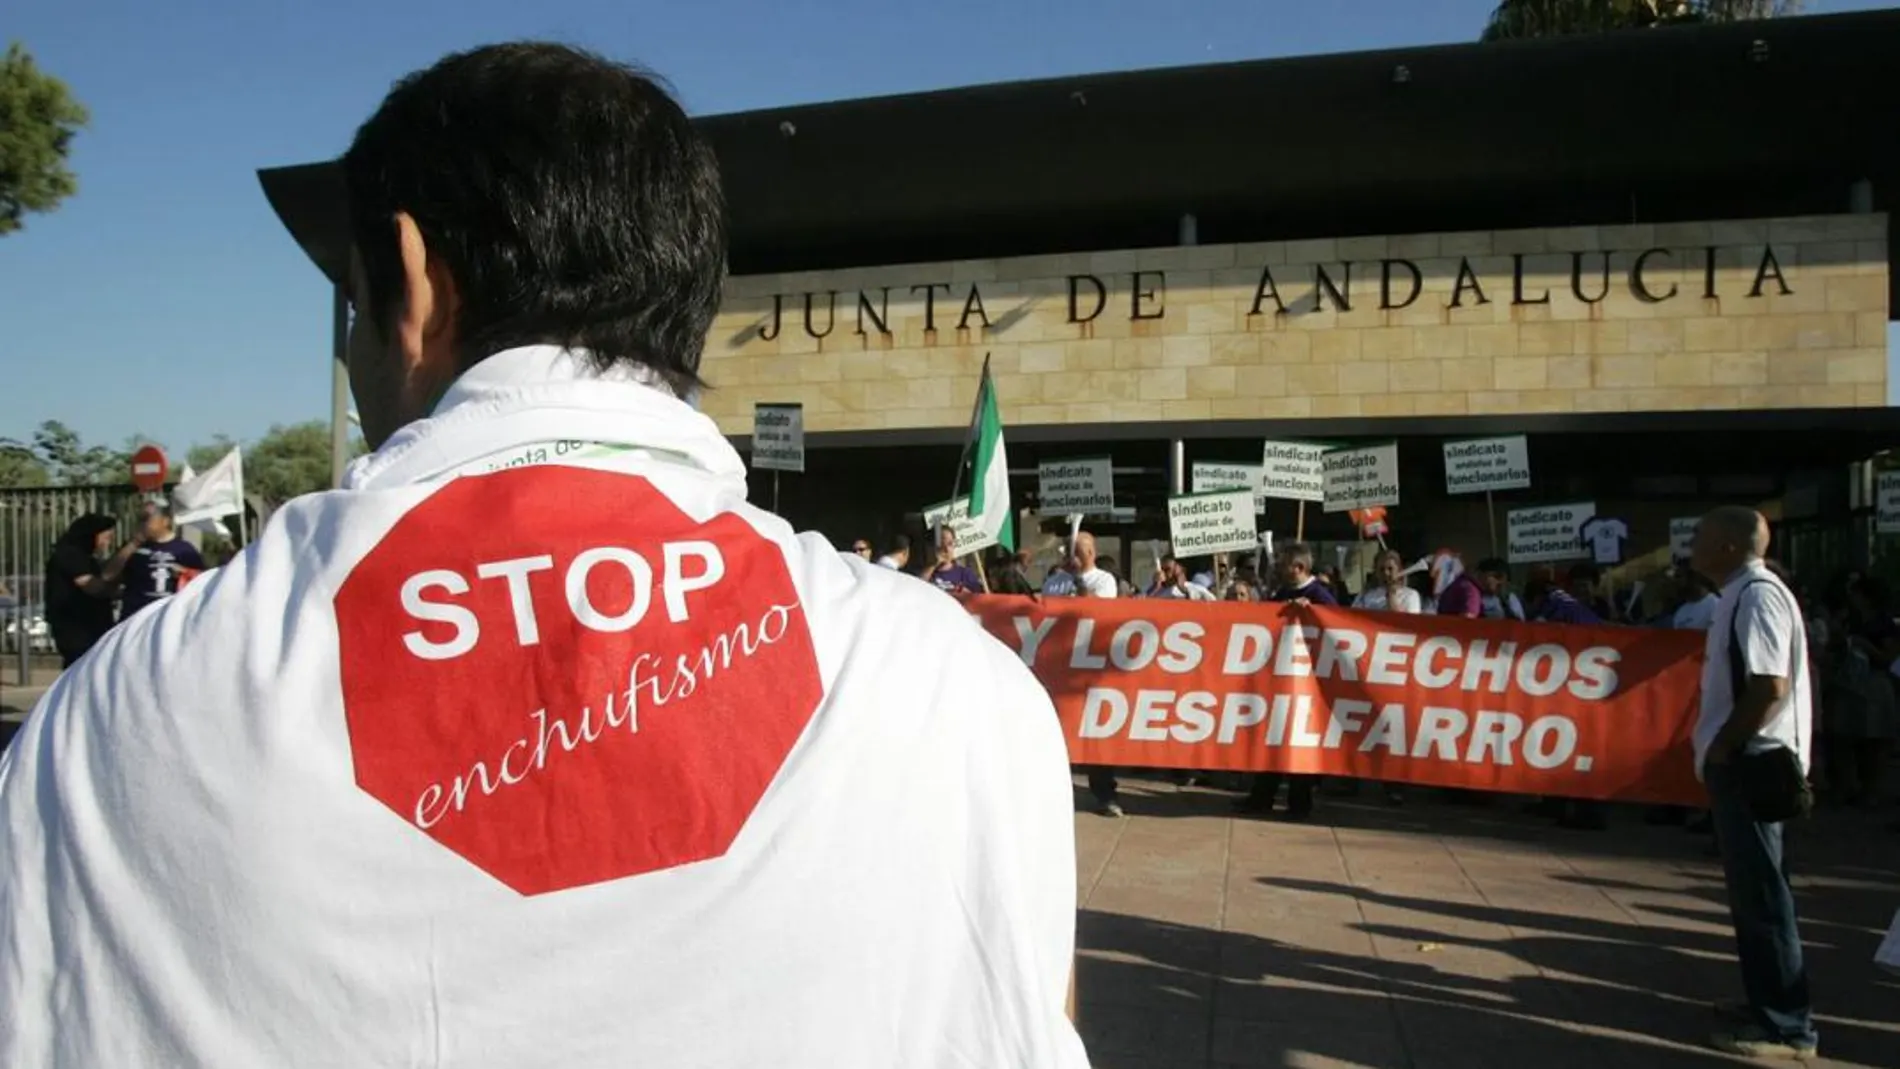 Los empleados públicos se han manifestado en varias ocasiones contra el enchufismo en la Junta de Andalucía